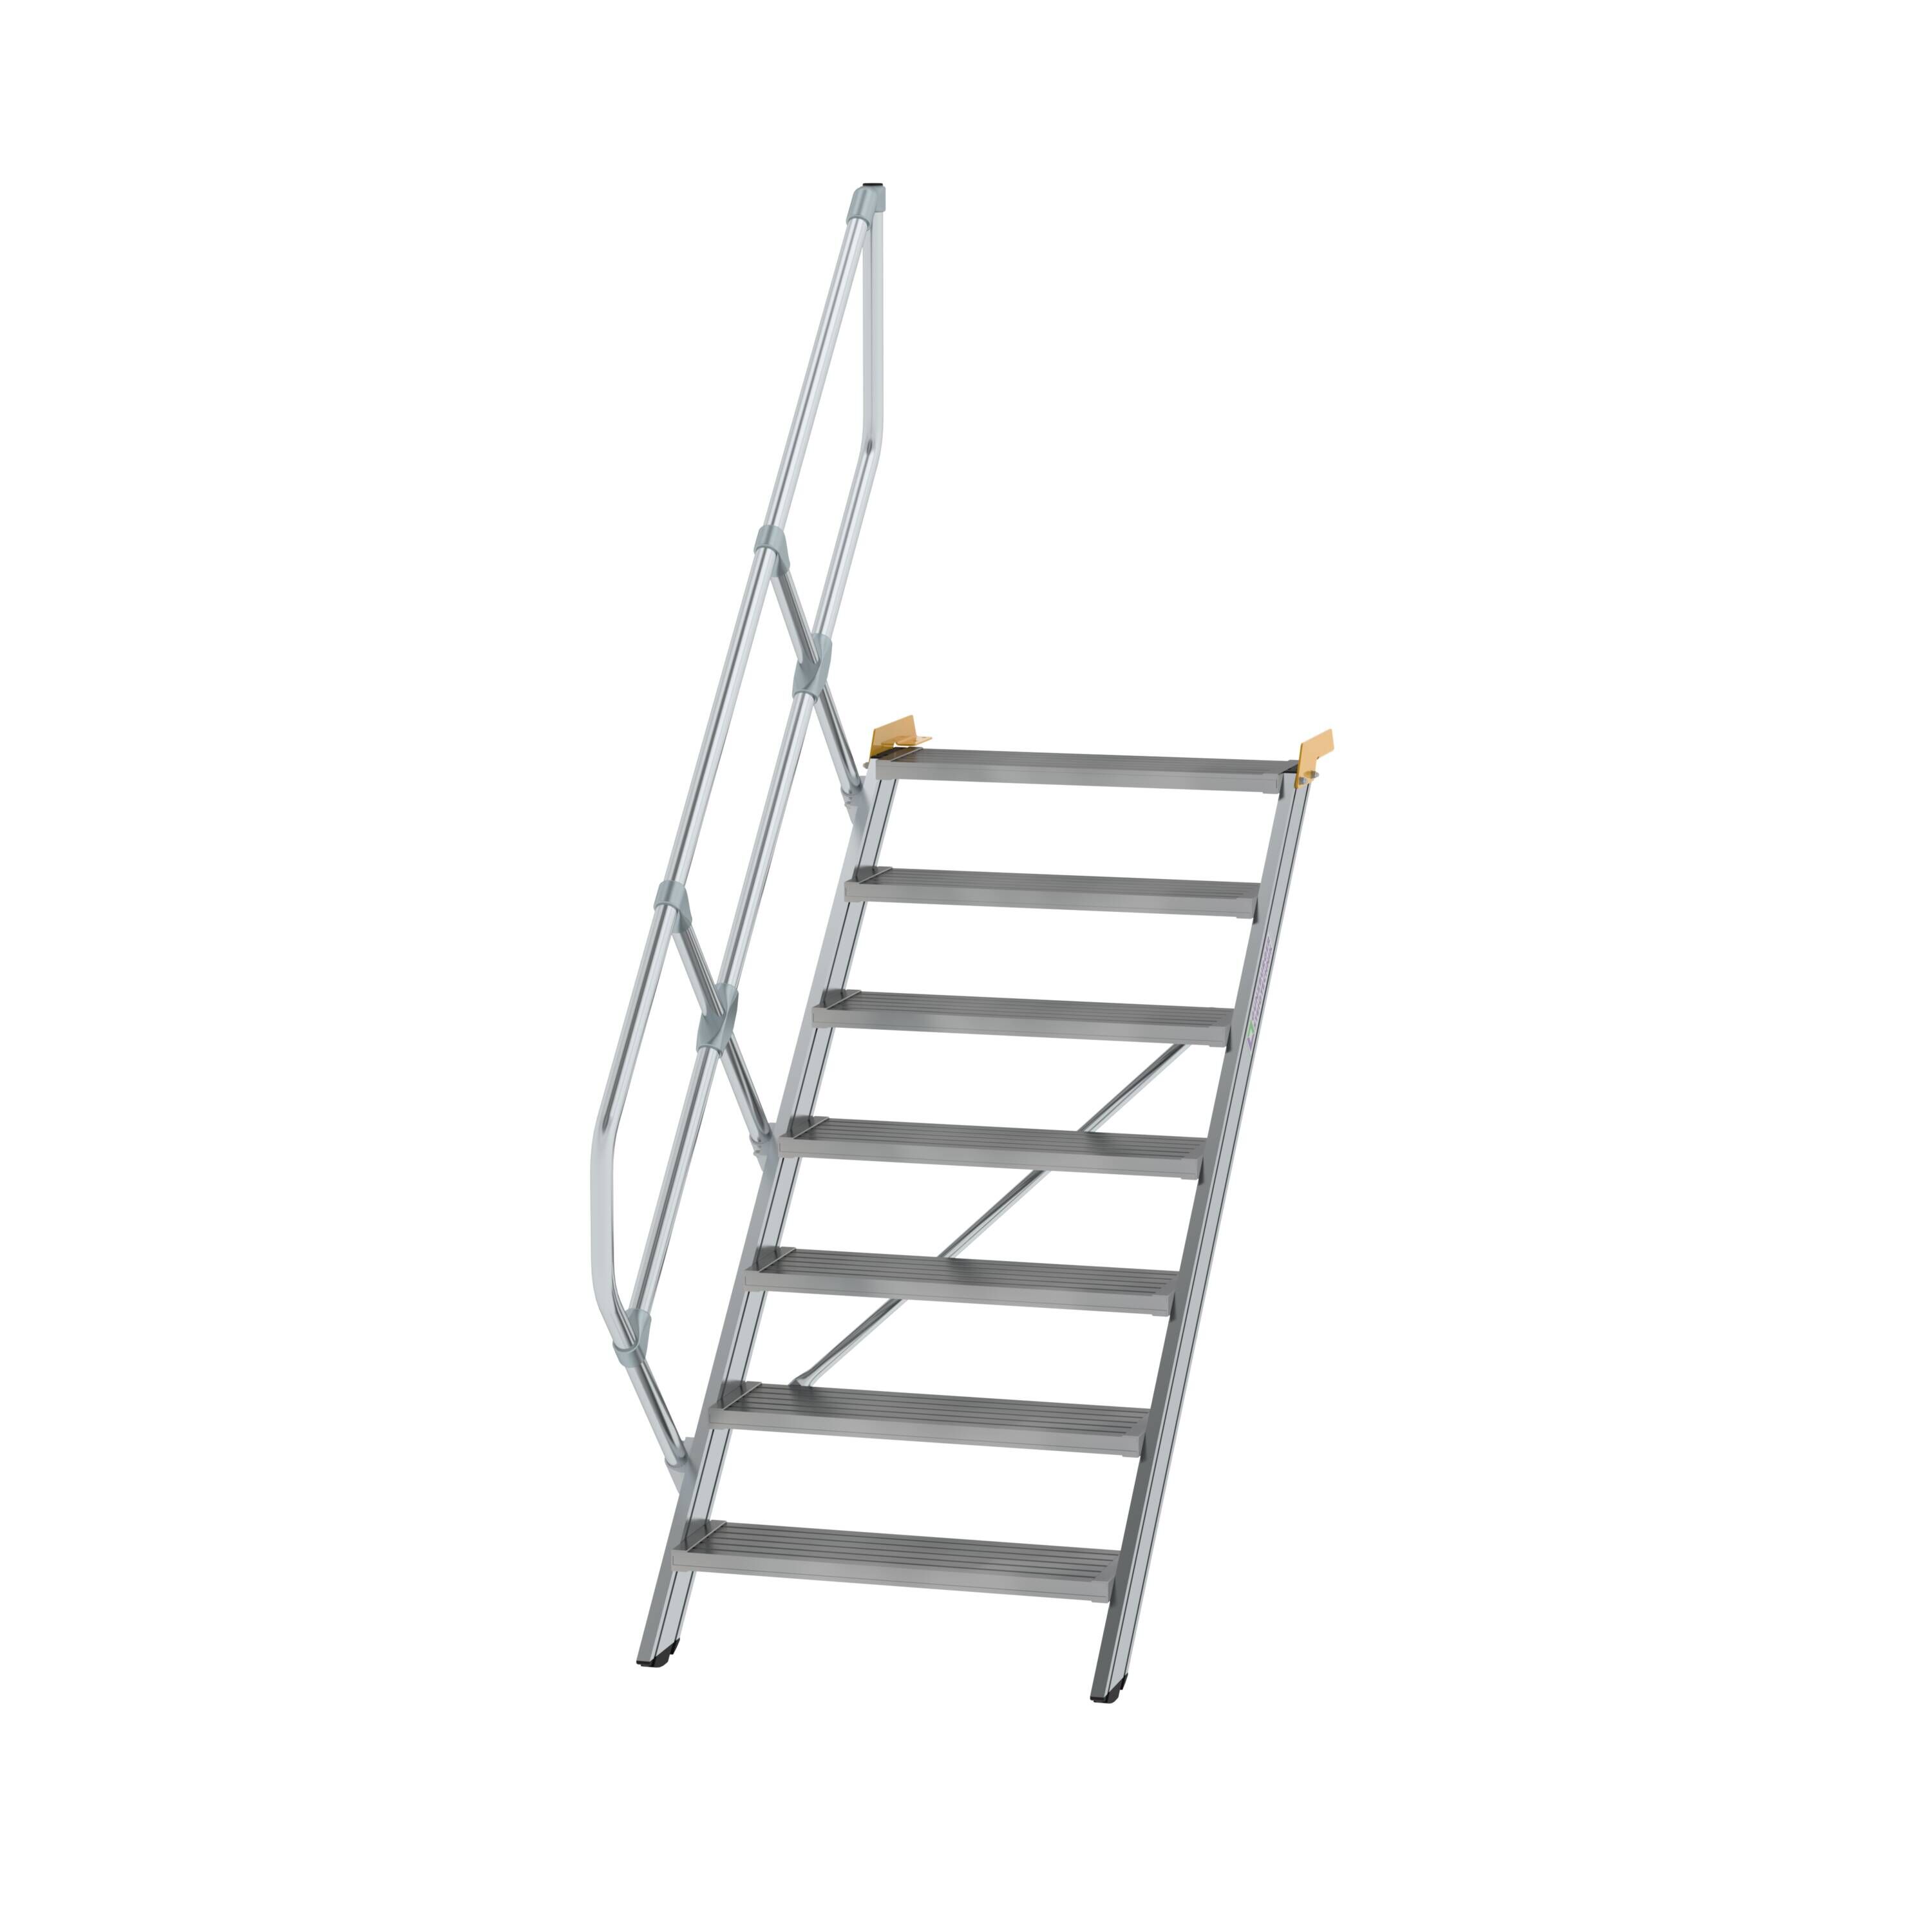 Treppe 45° Stufenbreite 800 mm 7 Stufen Aluminium geriffelt